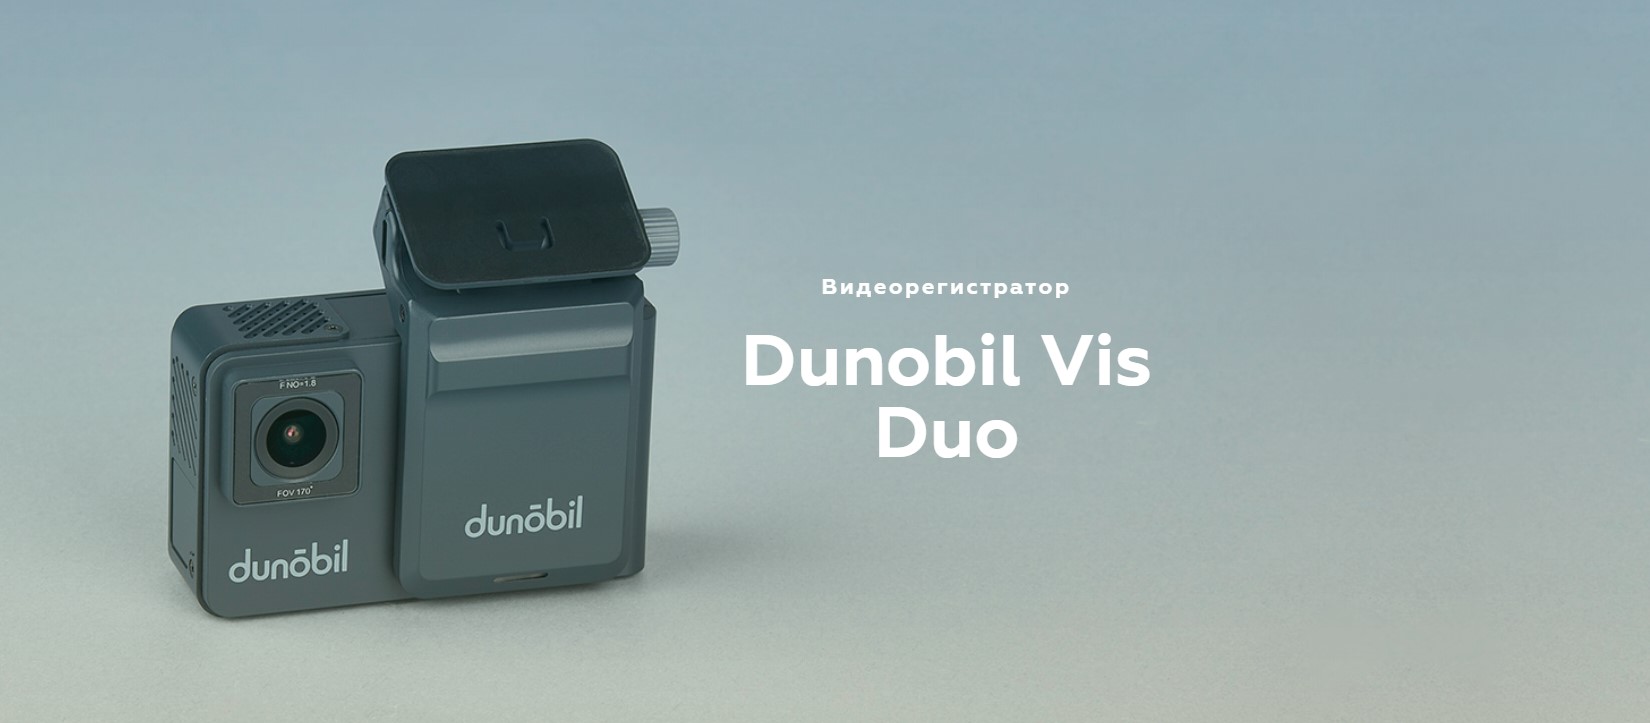 Dunobil Vis Duo (3)